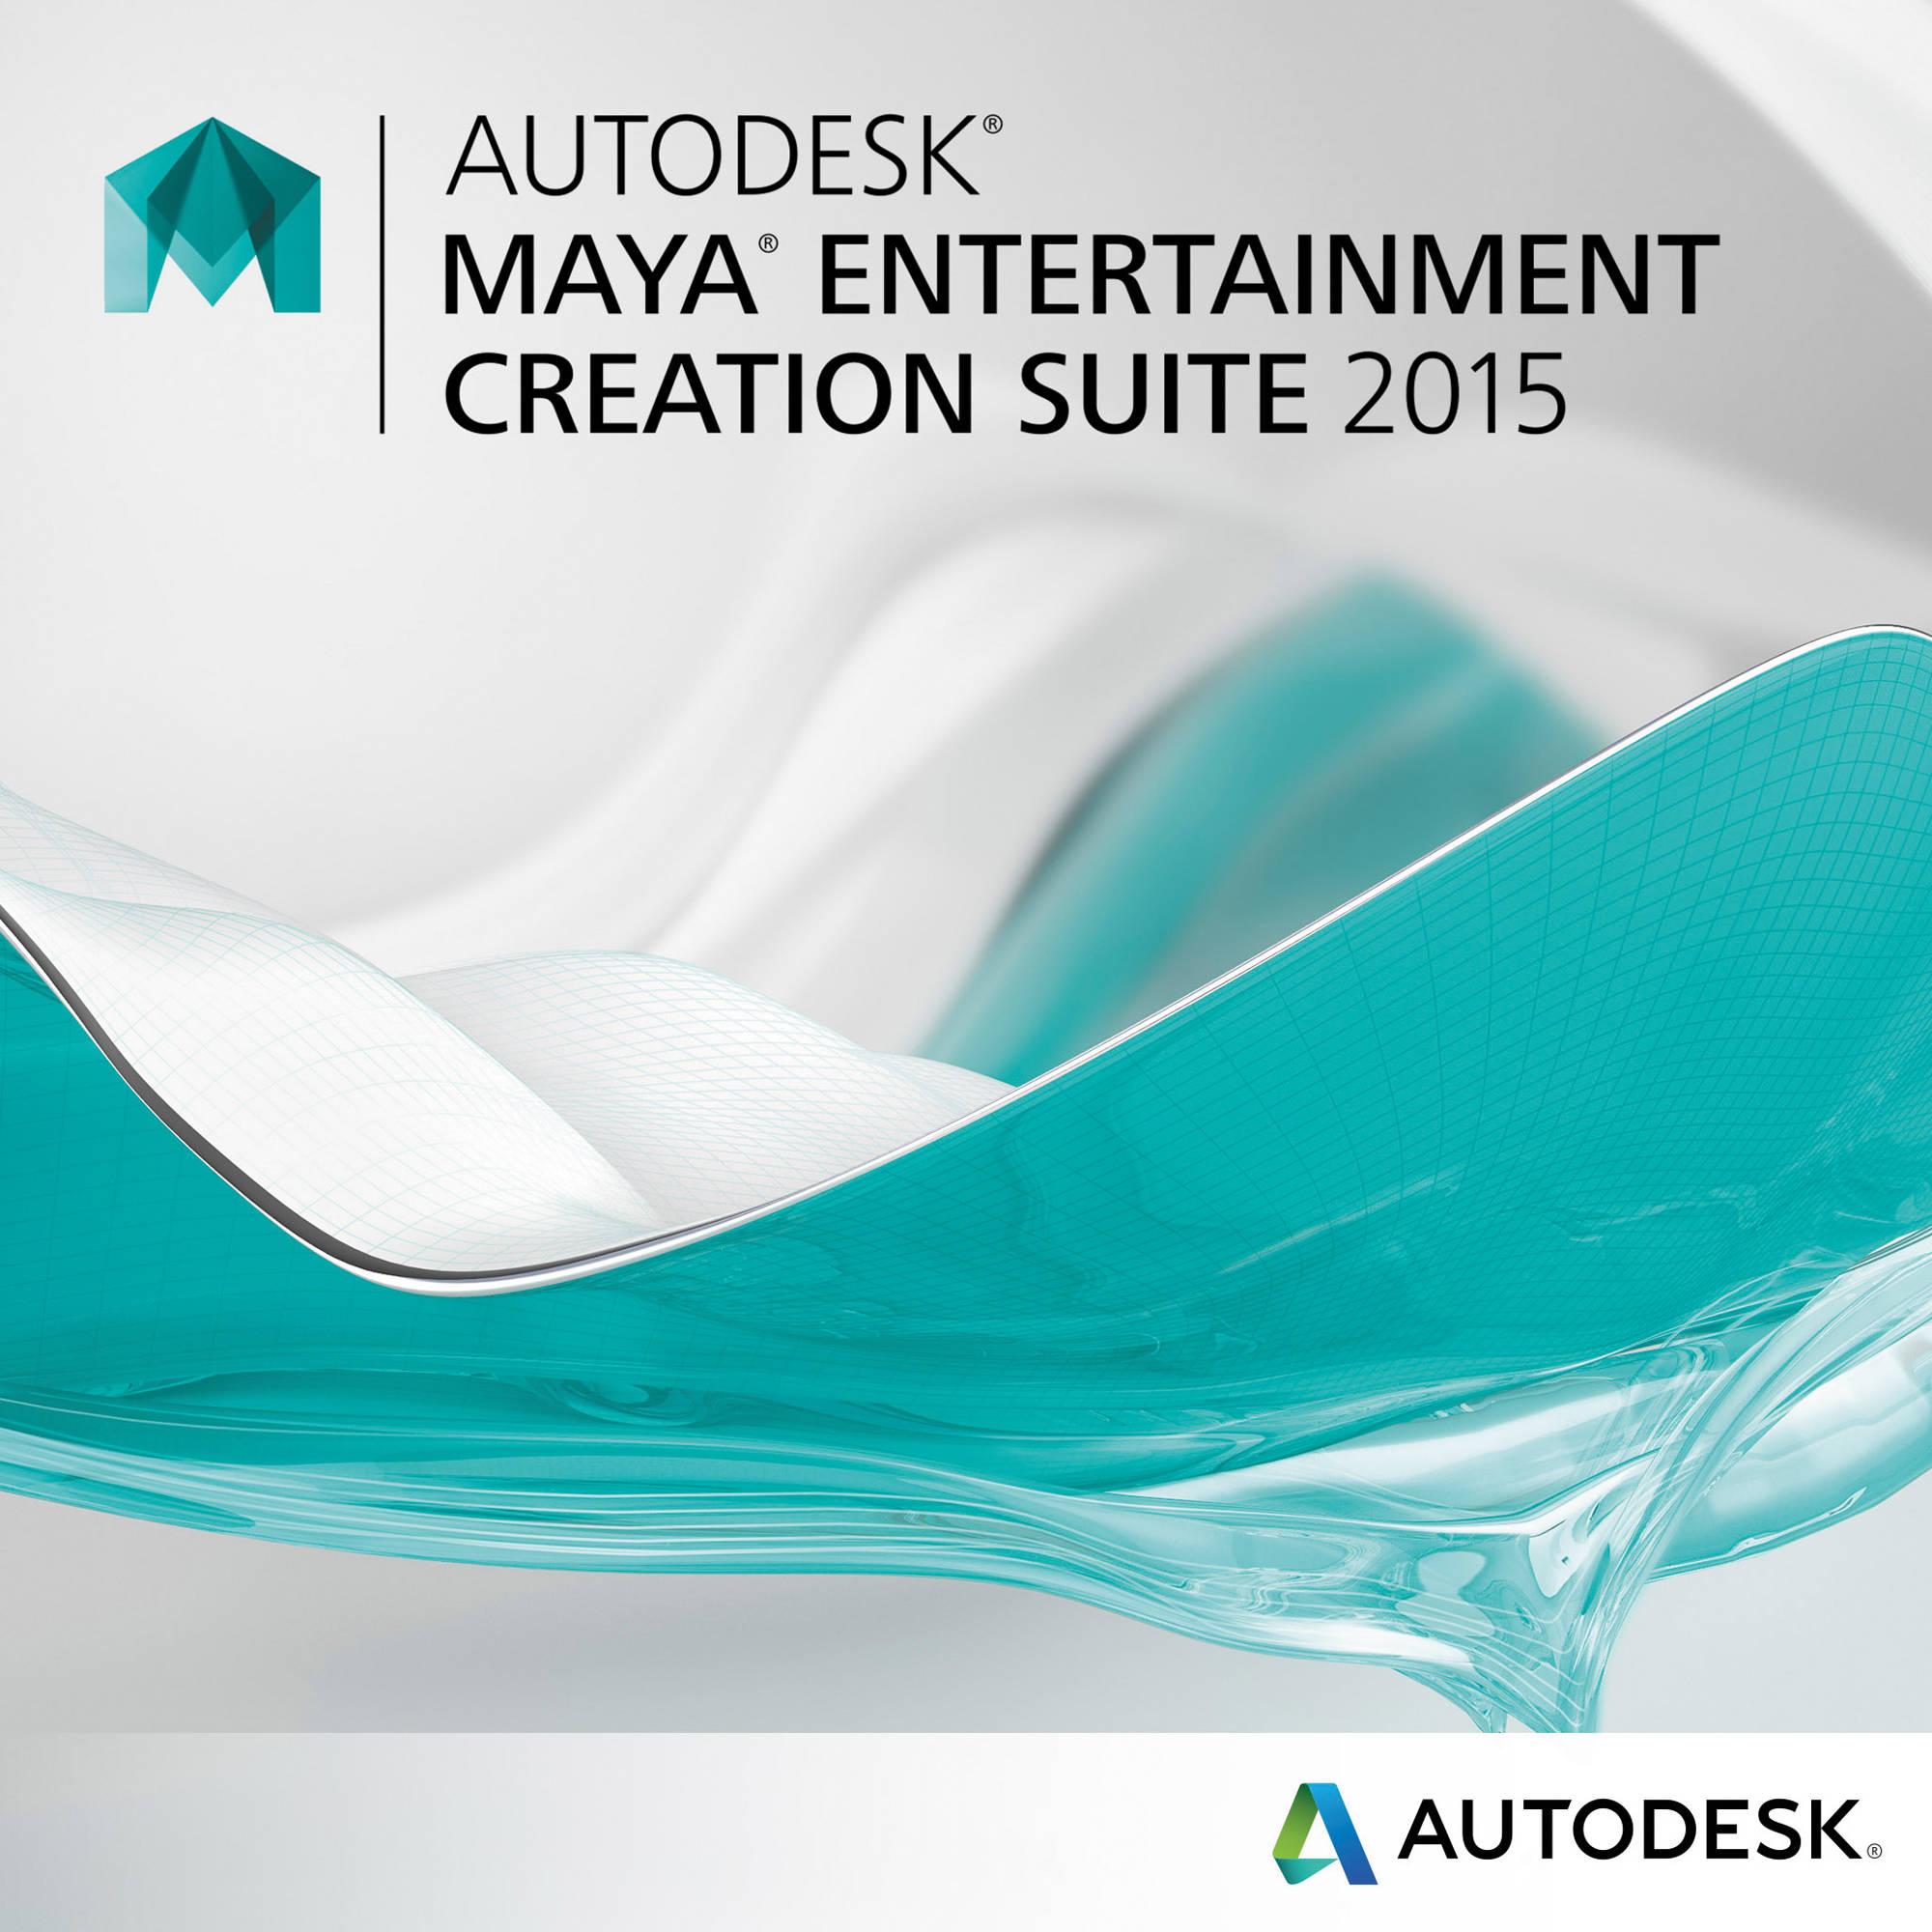 autodesk entertainment creation suite for mac